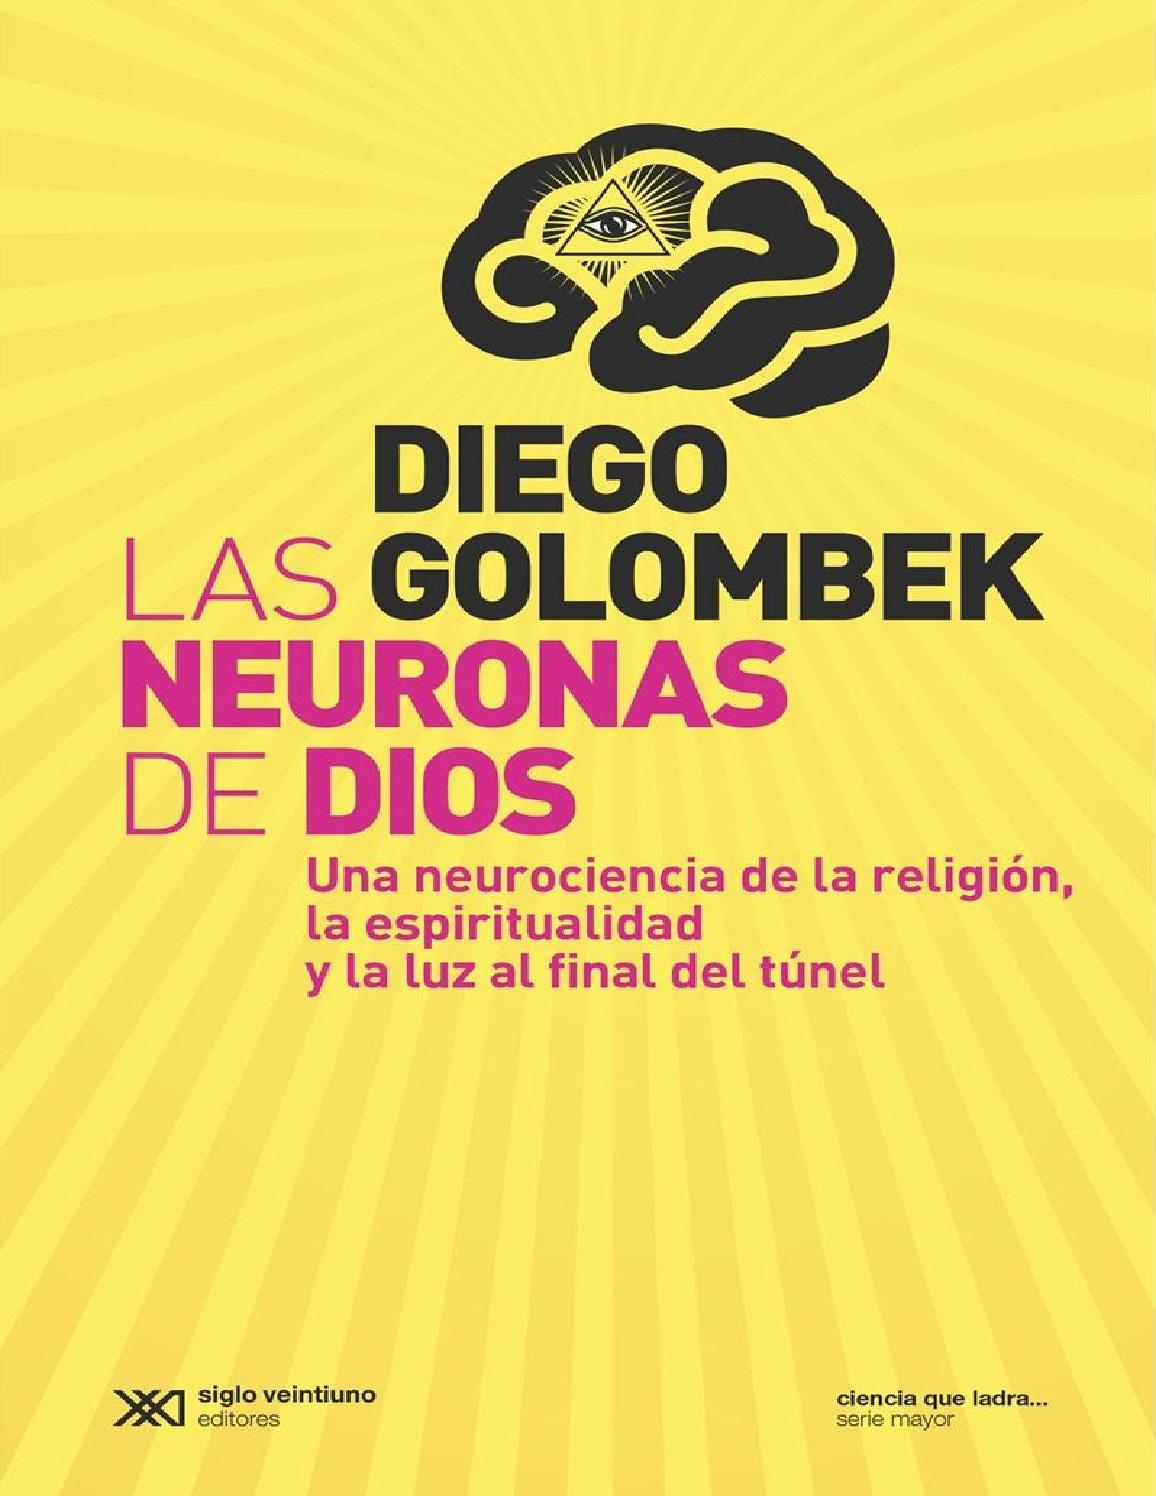 Neurociencia y religión